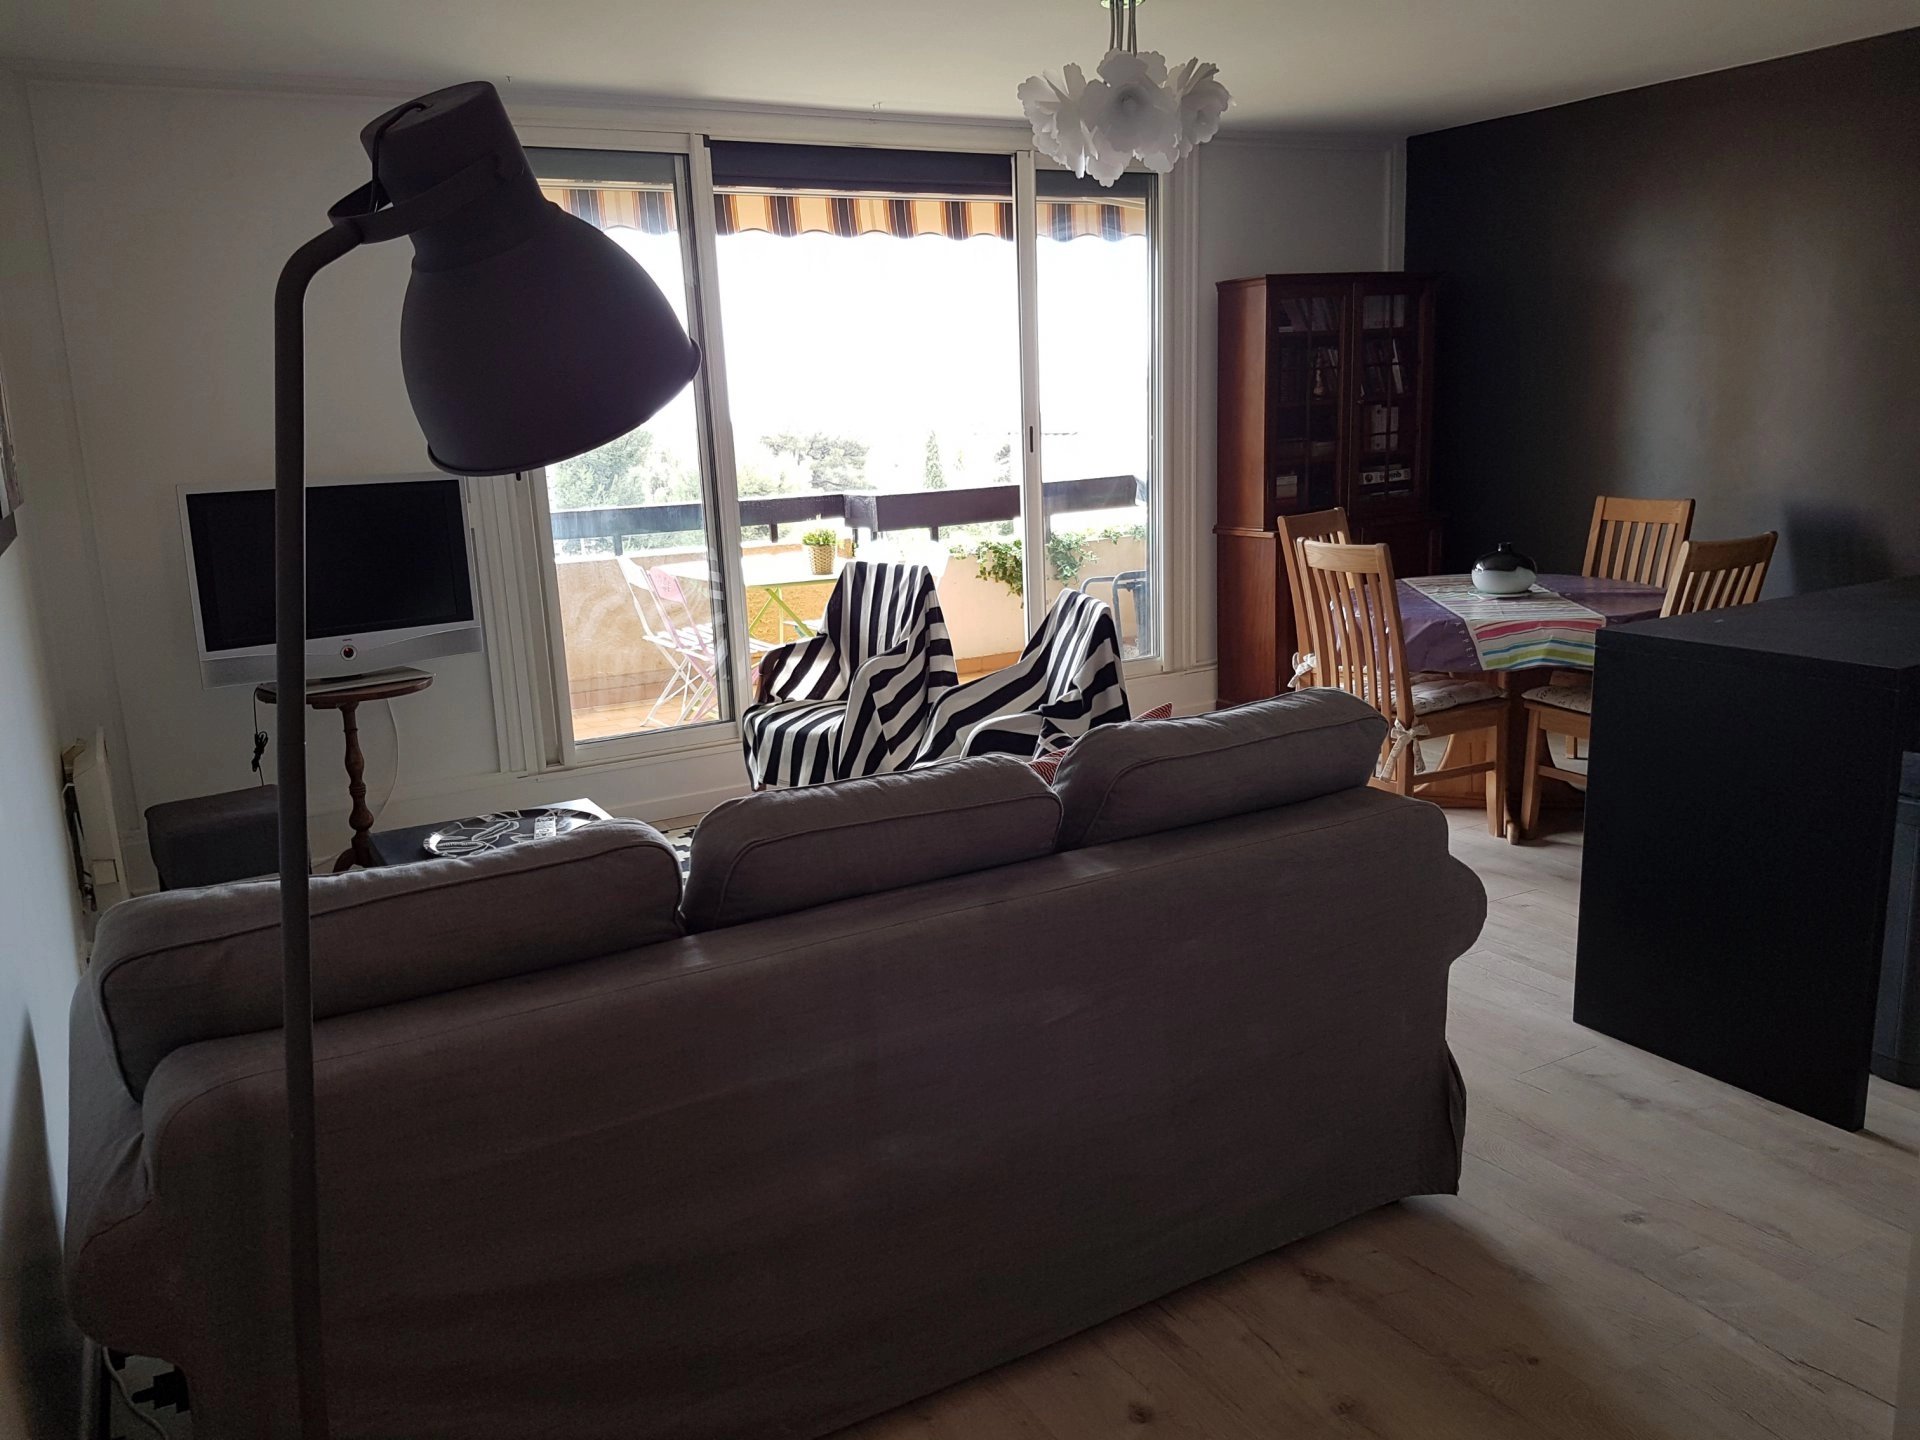 Living-room, wood floors